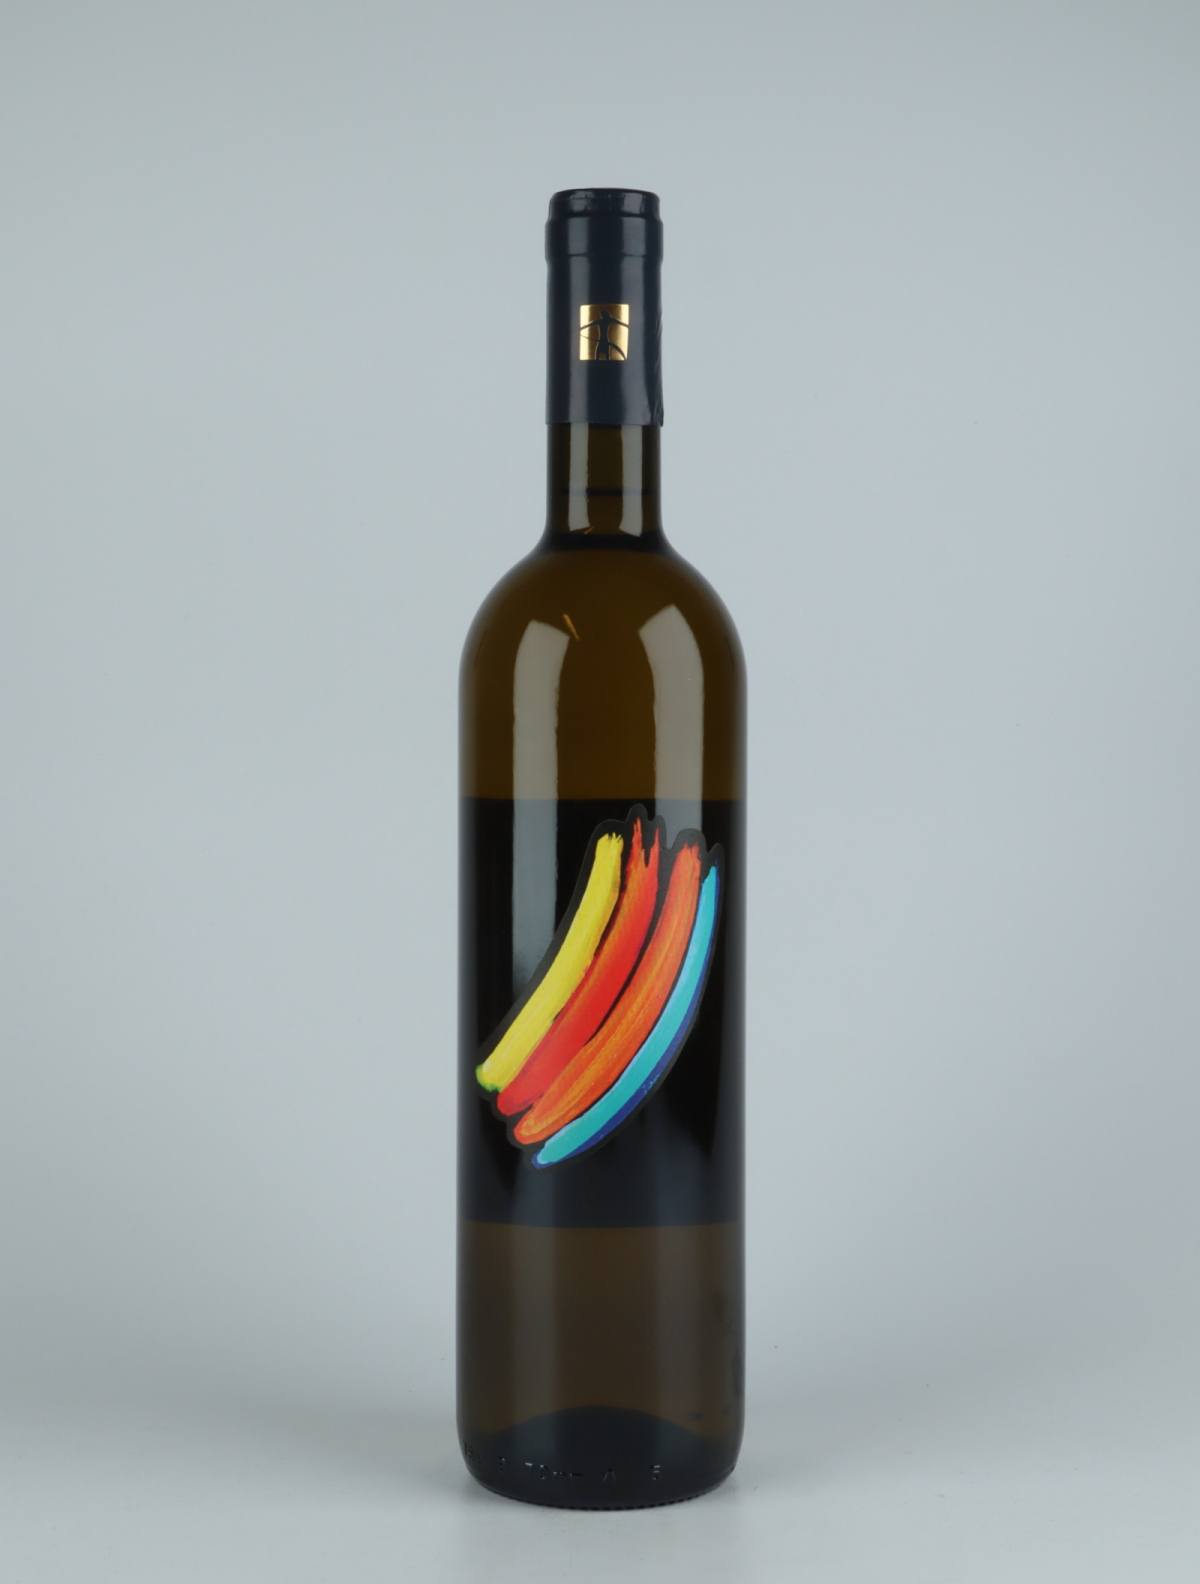 A bottle 2019 Crescendo White wine from Tenuta Selvadolce, Liguria in Italy